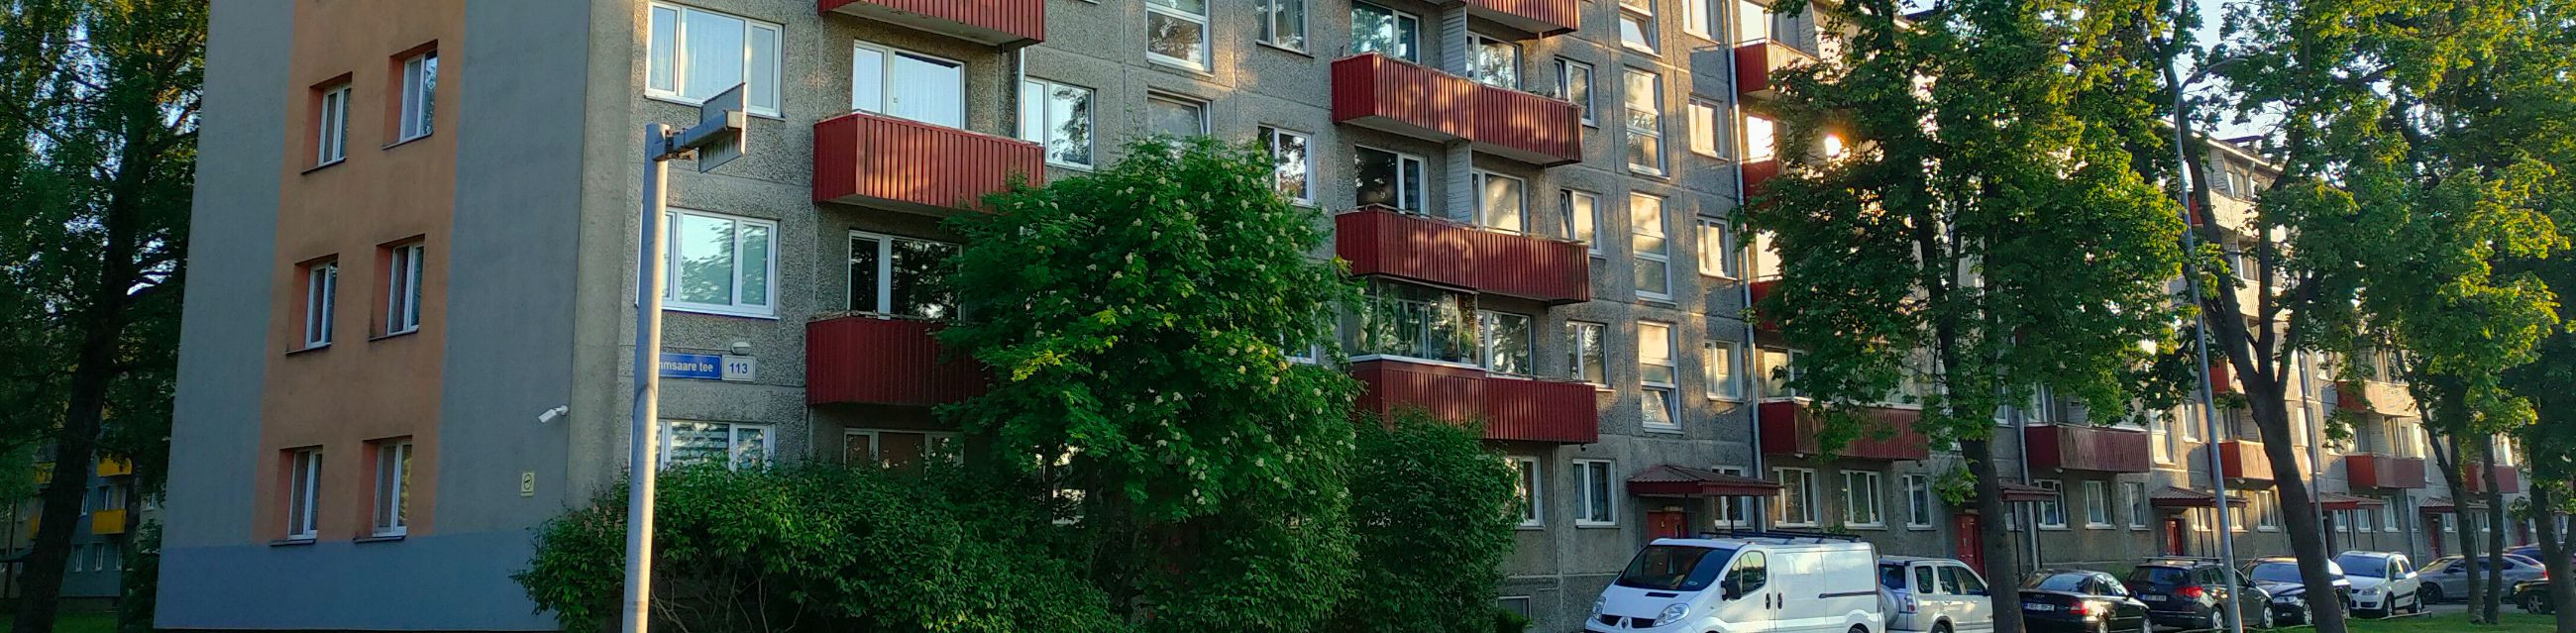 Tallinn, A.H. Tammsaare tee 113 korteriühistu põhilisteks eesmärkideks on elamu ja selle juurde kuuluva maa ühine majandamine ning seoses sellega ühistu li...